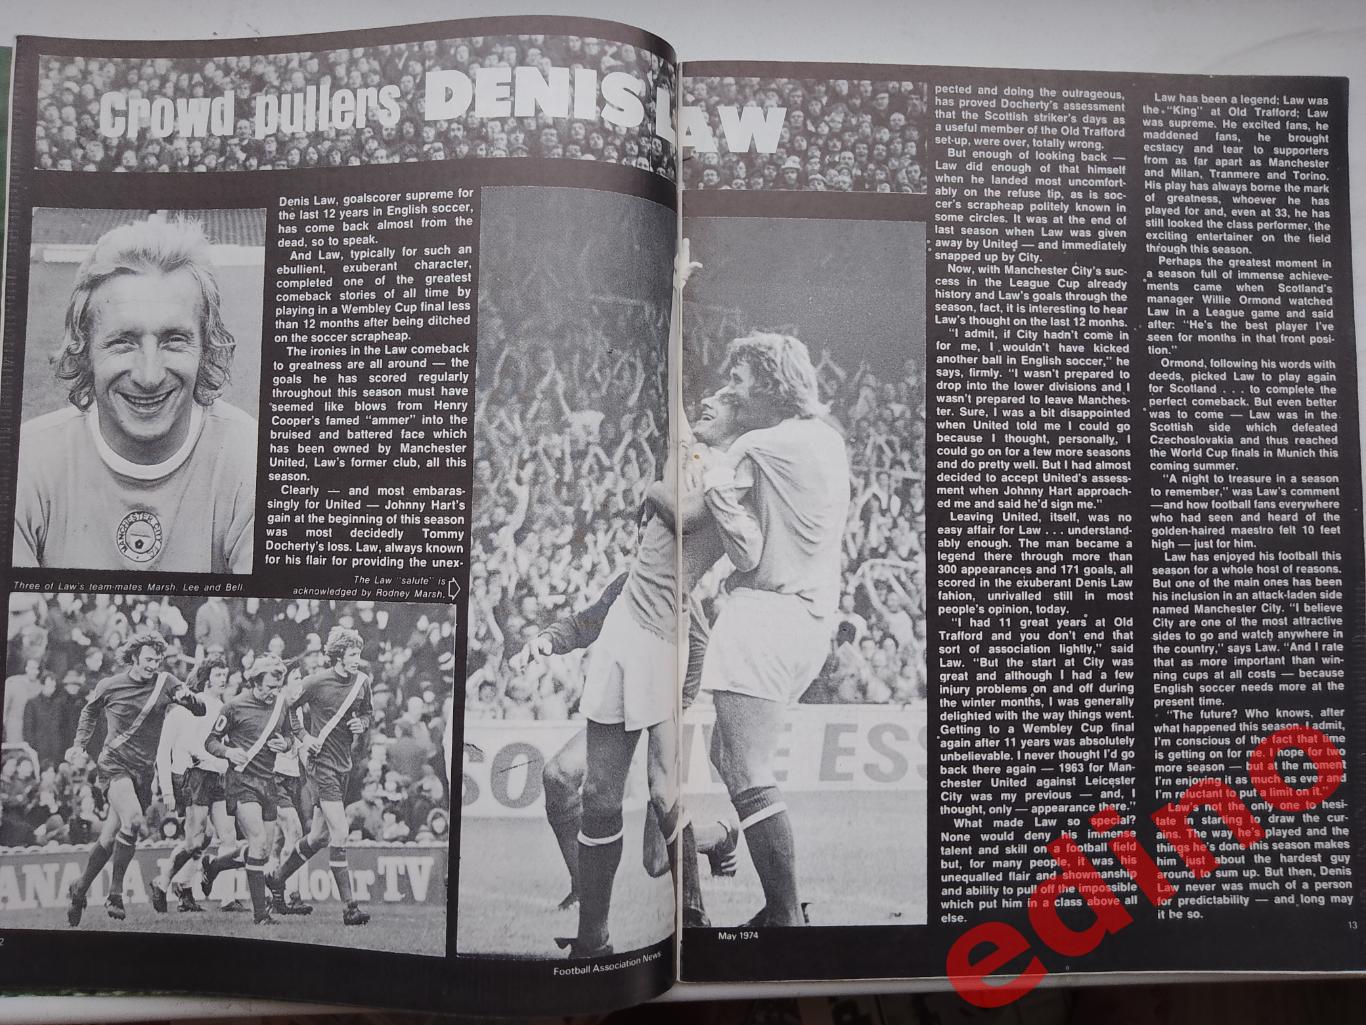 Football As News1974г. Ф. К. Мейдстоун/Ливерпуль 5